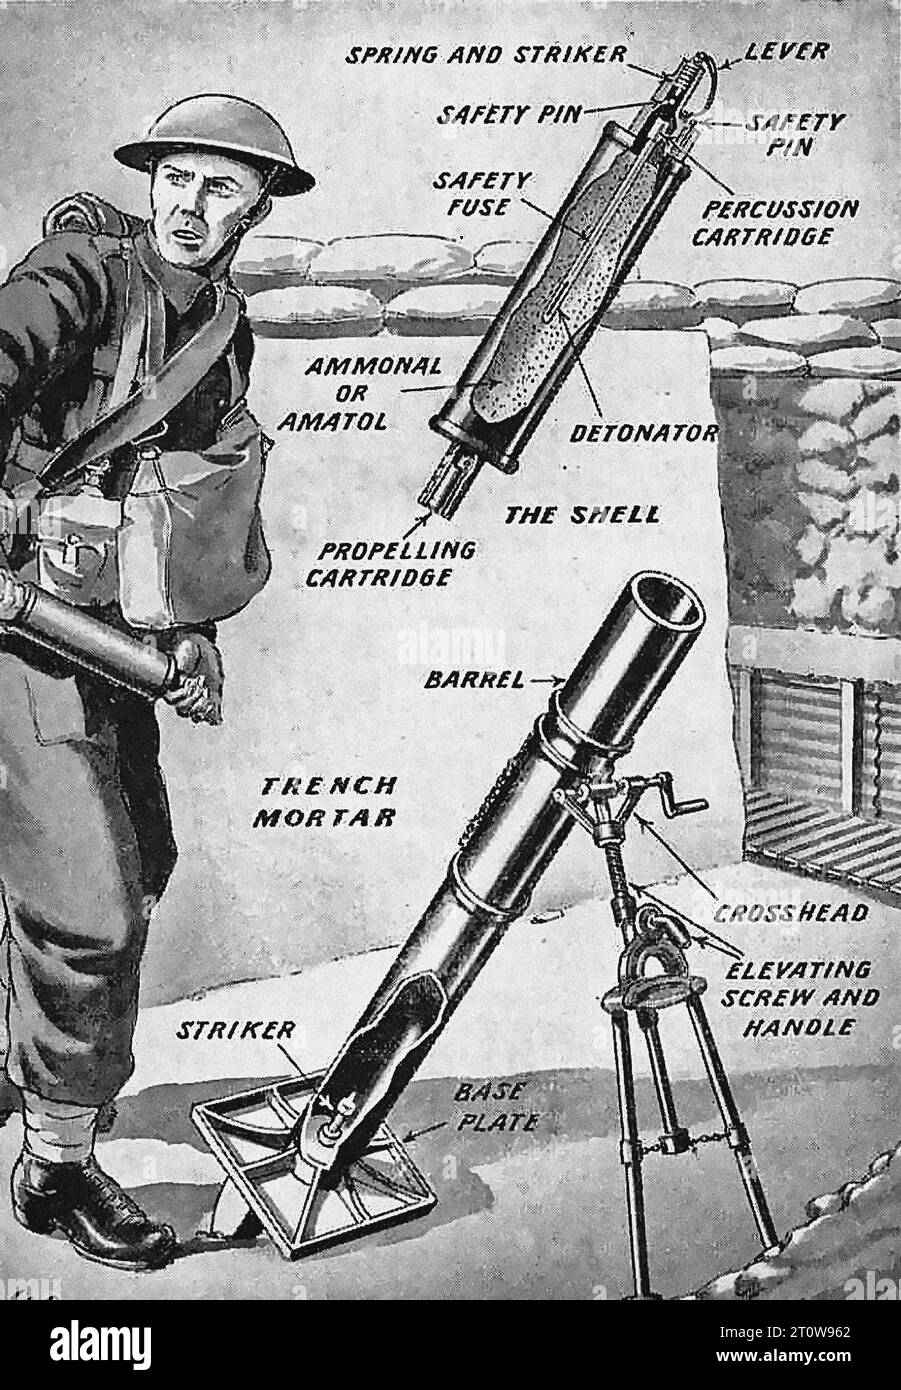 Description illustrée de l'armement, journal britannique - Royaume-Uni, Seconde Guerre mondiale : l'image représente un soldat opérant un mortier de tranchée. Le soldat, vêtu d'un casque, est positionné sur un affleurement rocheux. Le mortier, caractérisé par son long canon, sa plaque de base et sa poignée, est le point focal de l'image. L'image est encore améliorée par des étiquettes indiquant les différents composants du mortier, tels que le ressort et le percuteur, la goupille de sécurité, la fusée de sécurité, la cartouche de percussion, l'ammonal ou l'amatol, détonateur, obus, canon, percuteur, crosse, vis et poignée élévatrices, et plaque de base. Banque D'Images